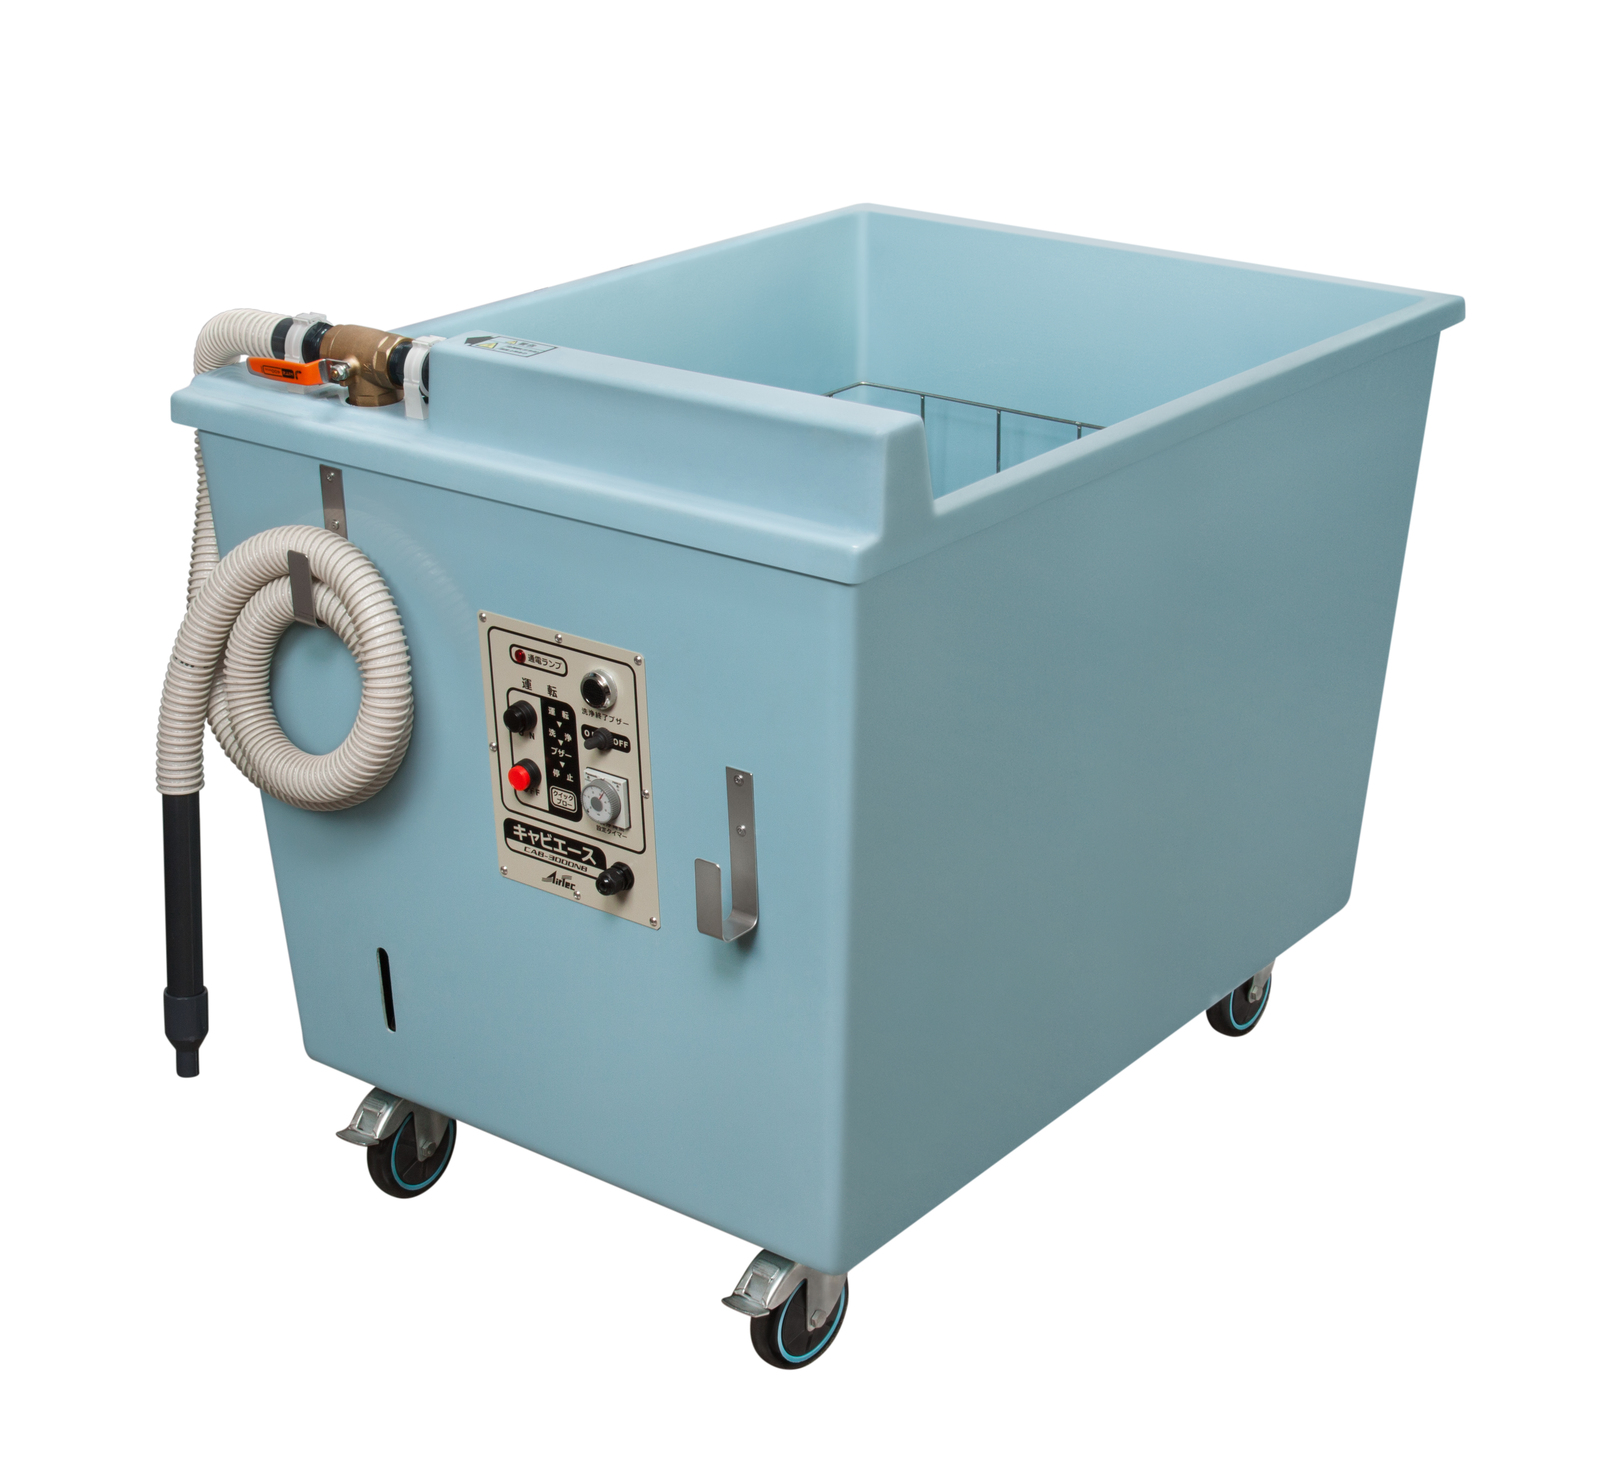 キャビテーション洗浄機 | KYC 光洋機械産業株式会社